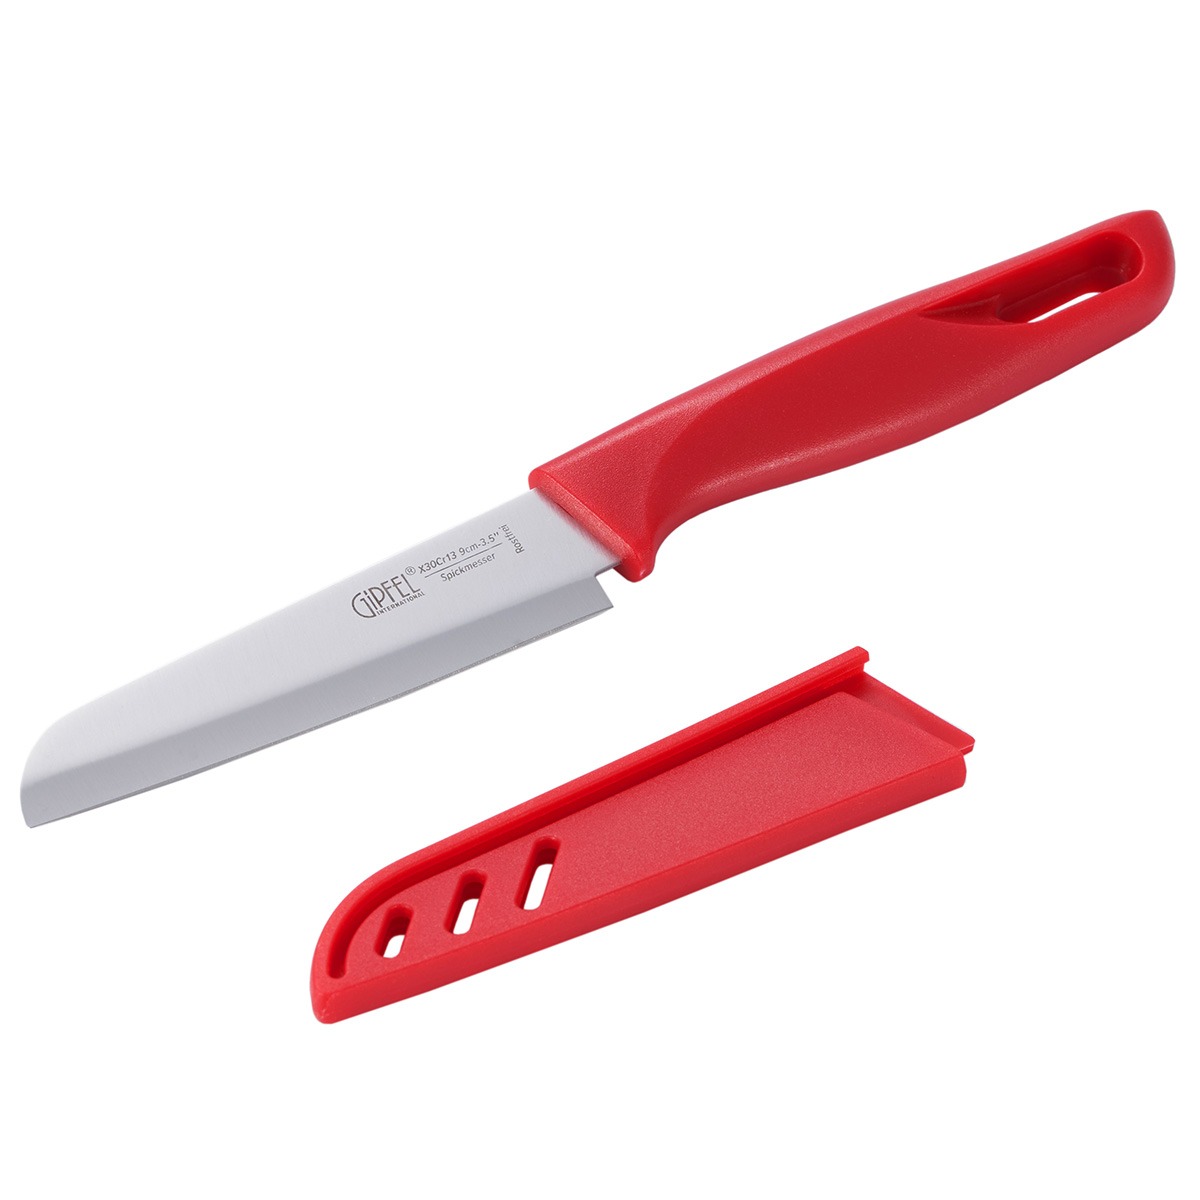 Нож для чистки овощей Gipfel Sorti стальной красный 9 см нож для чистки овощей gipfel sorti 52033 9 см